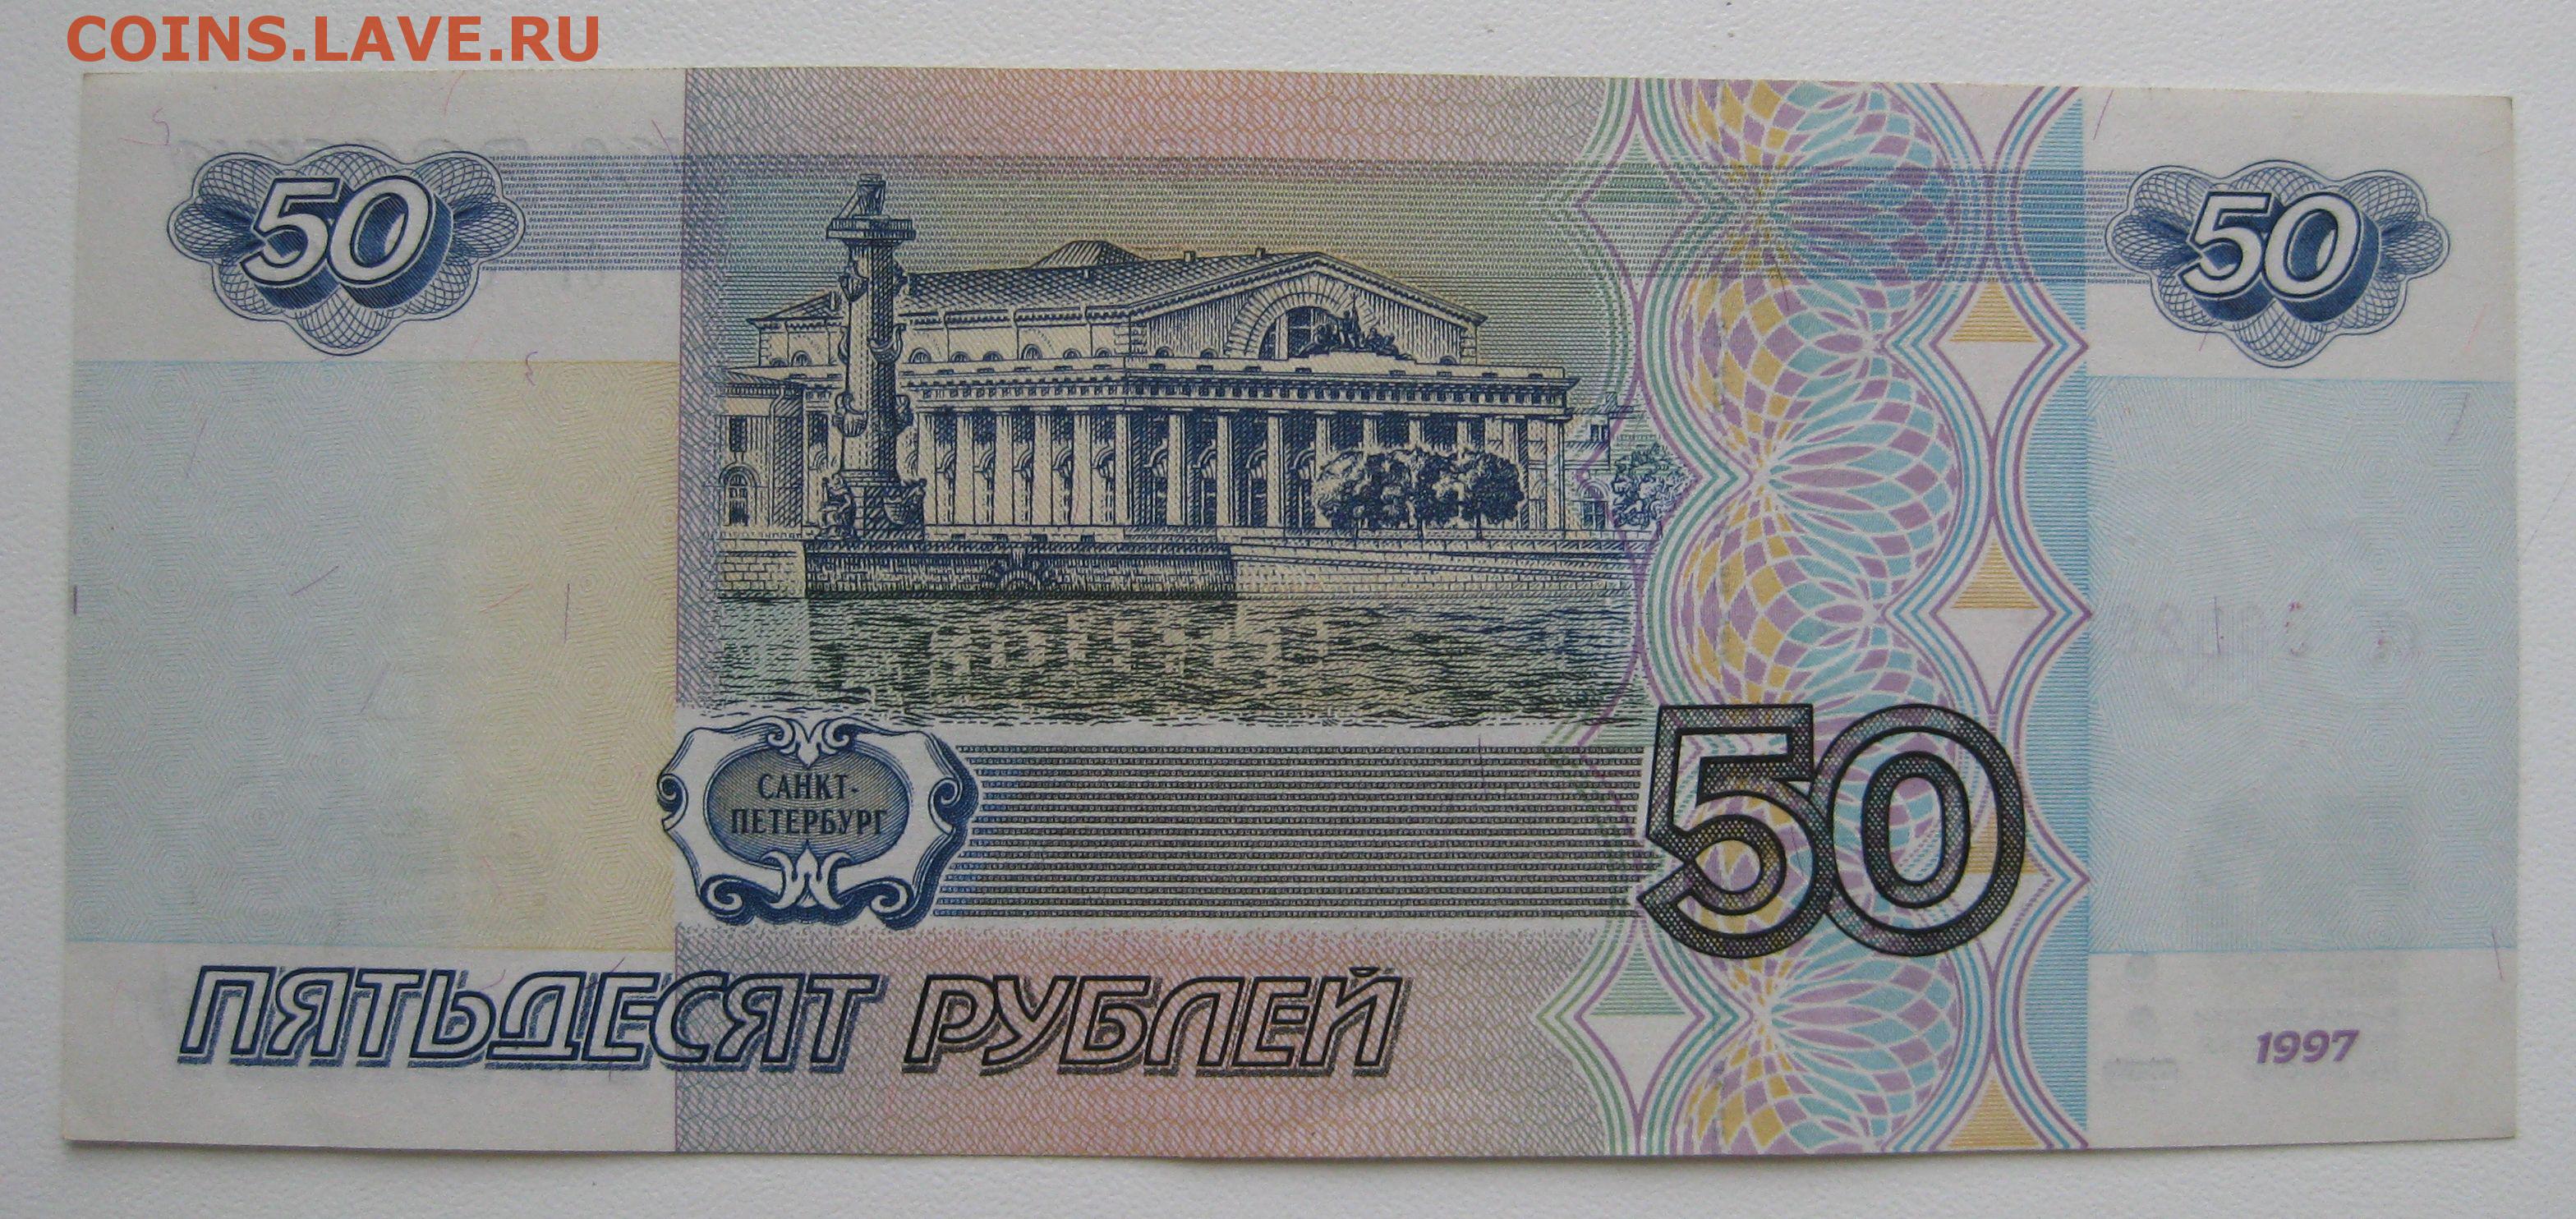 Пятьдесят р. Купюра 50 р. Купюра 50 рублей. Банкнота 50 рублей. 50 Рублей изображение.